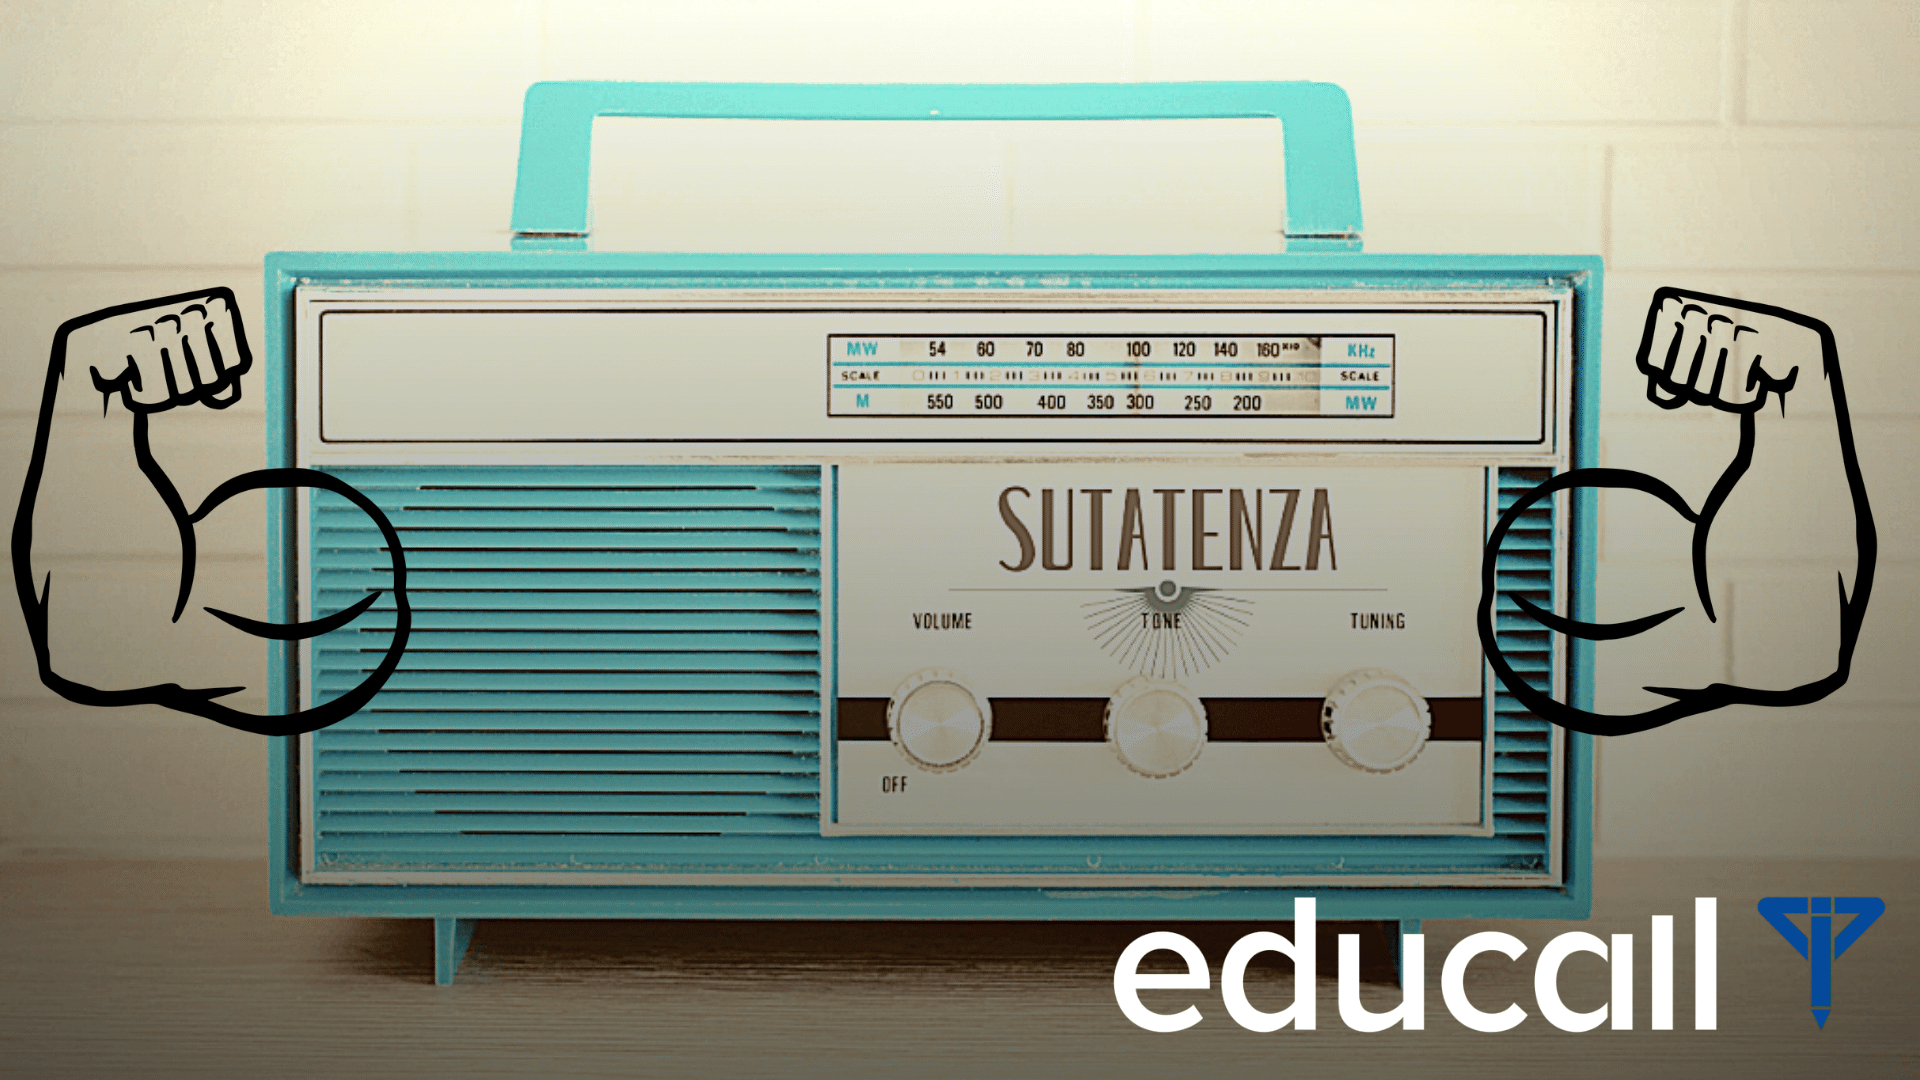 En este momento estás viendo El  legado educativo y cultural de Radio Sutatenza, una estafeta que soñamos heredar.